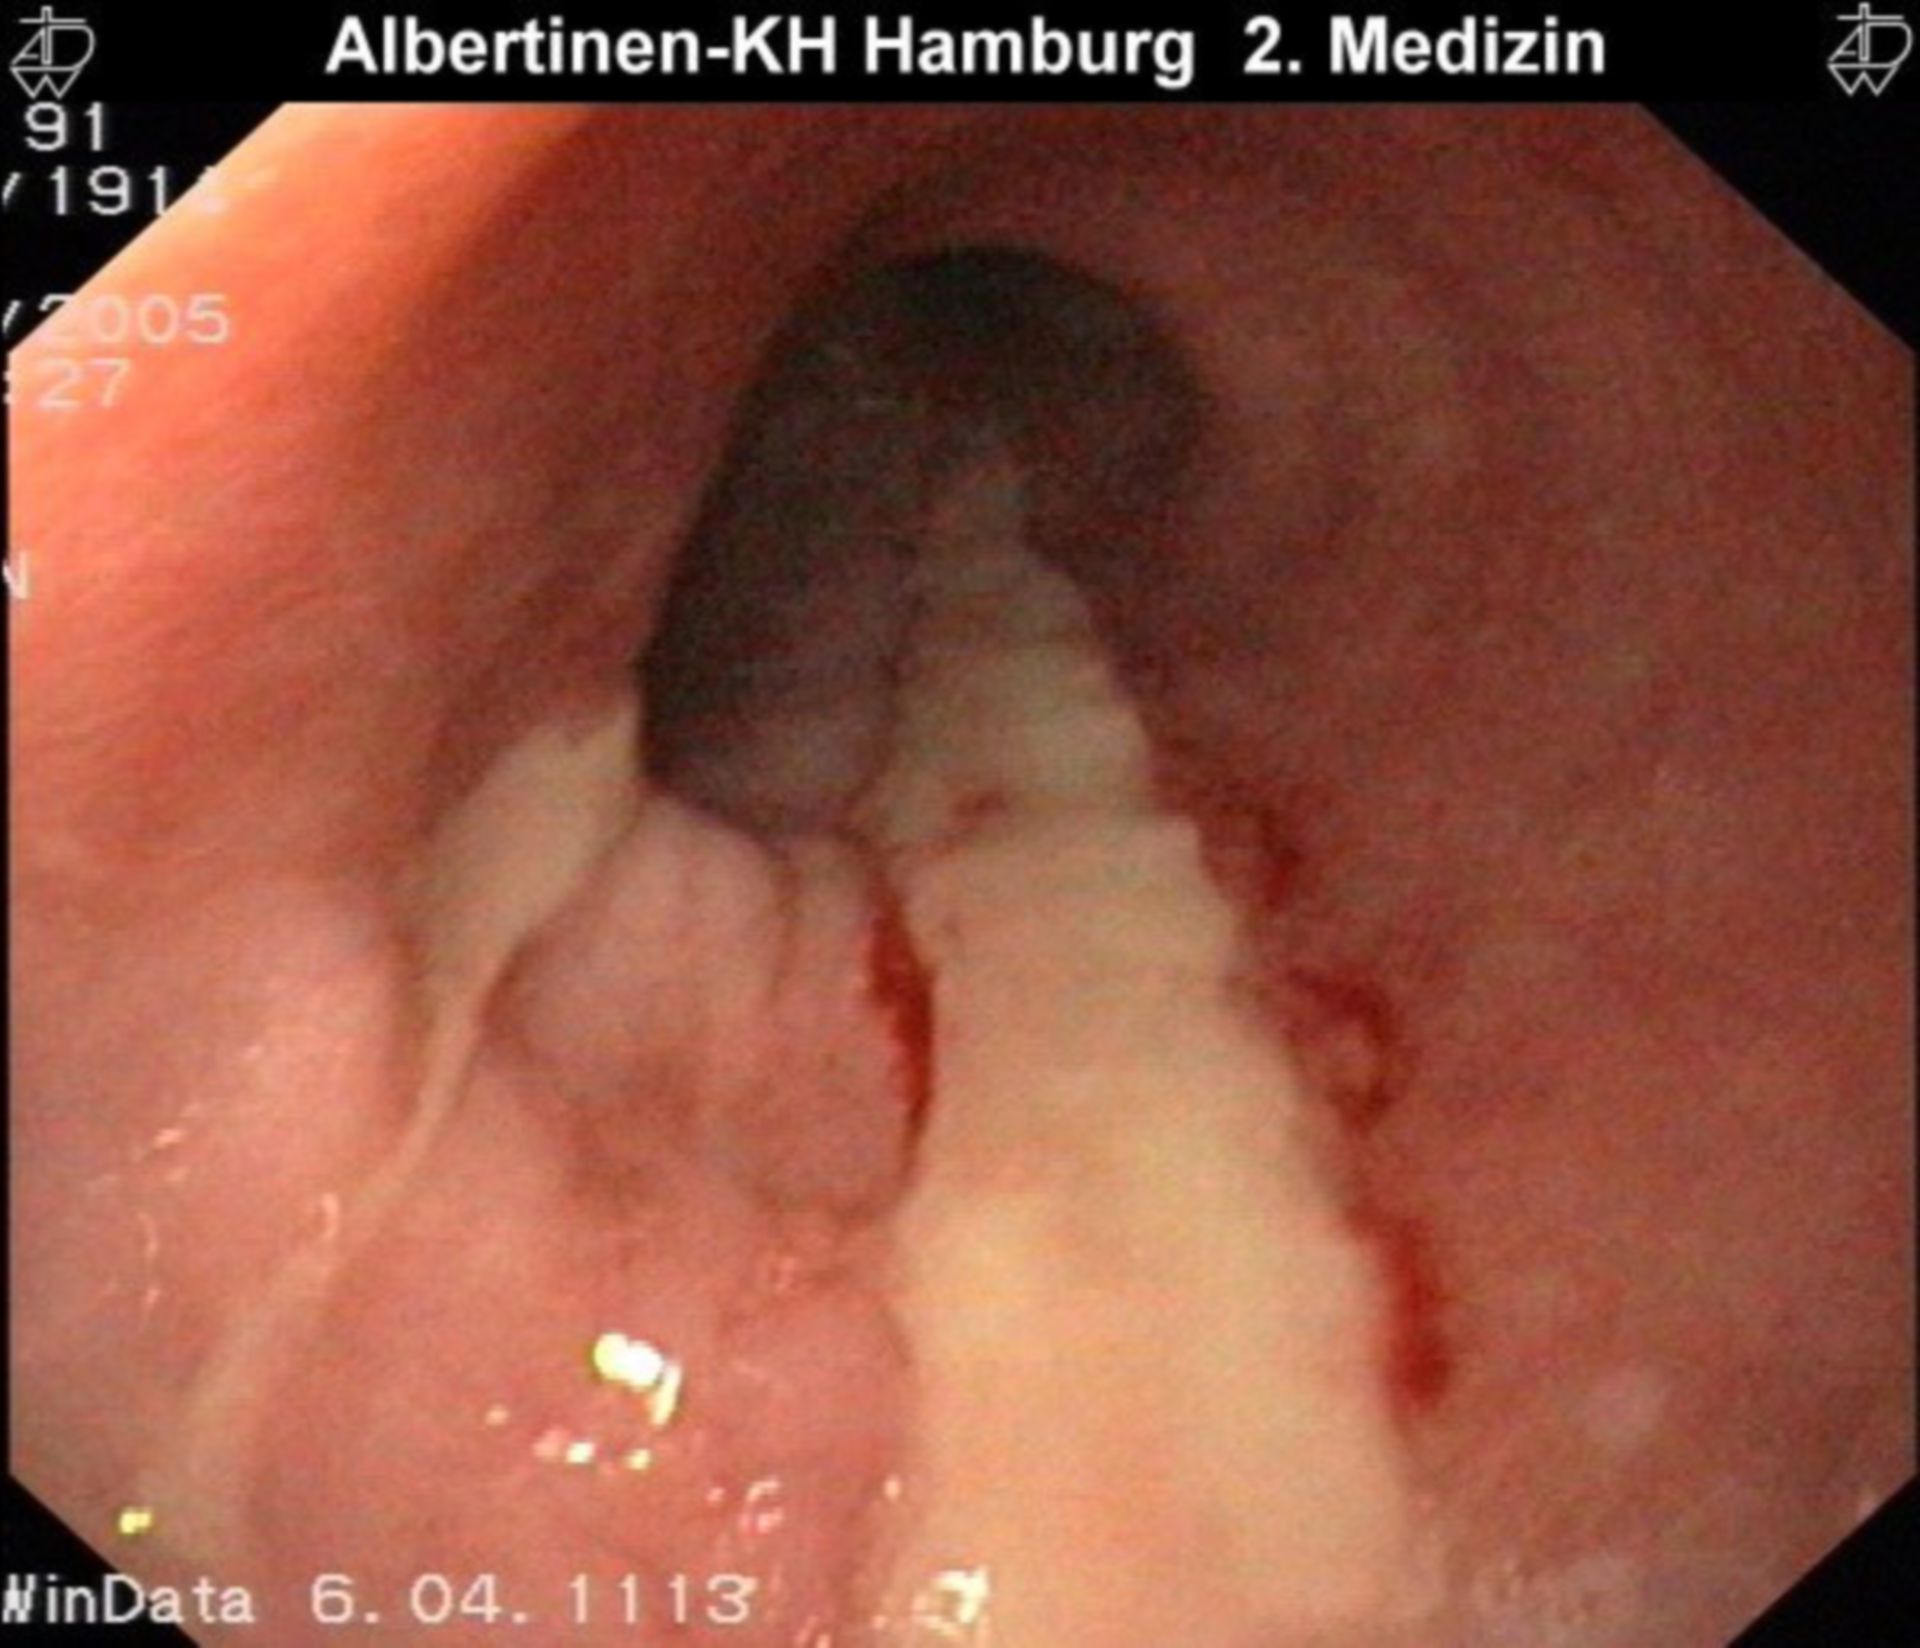 Fibrinous esophagitis